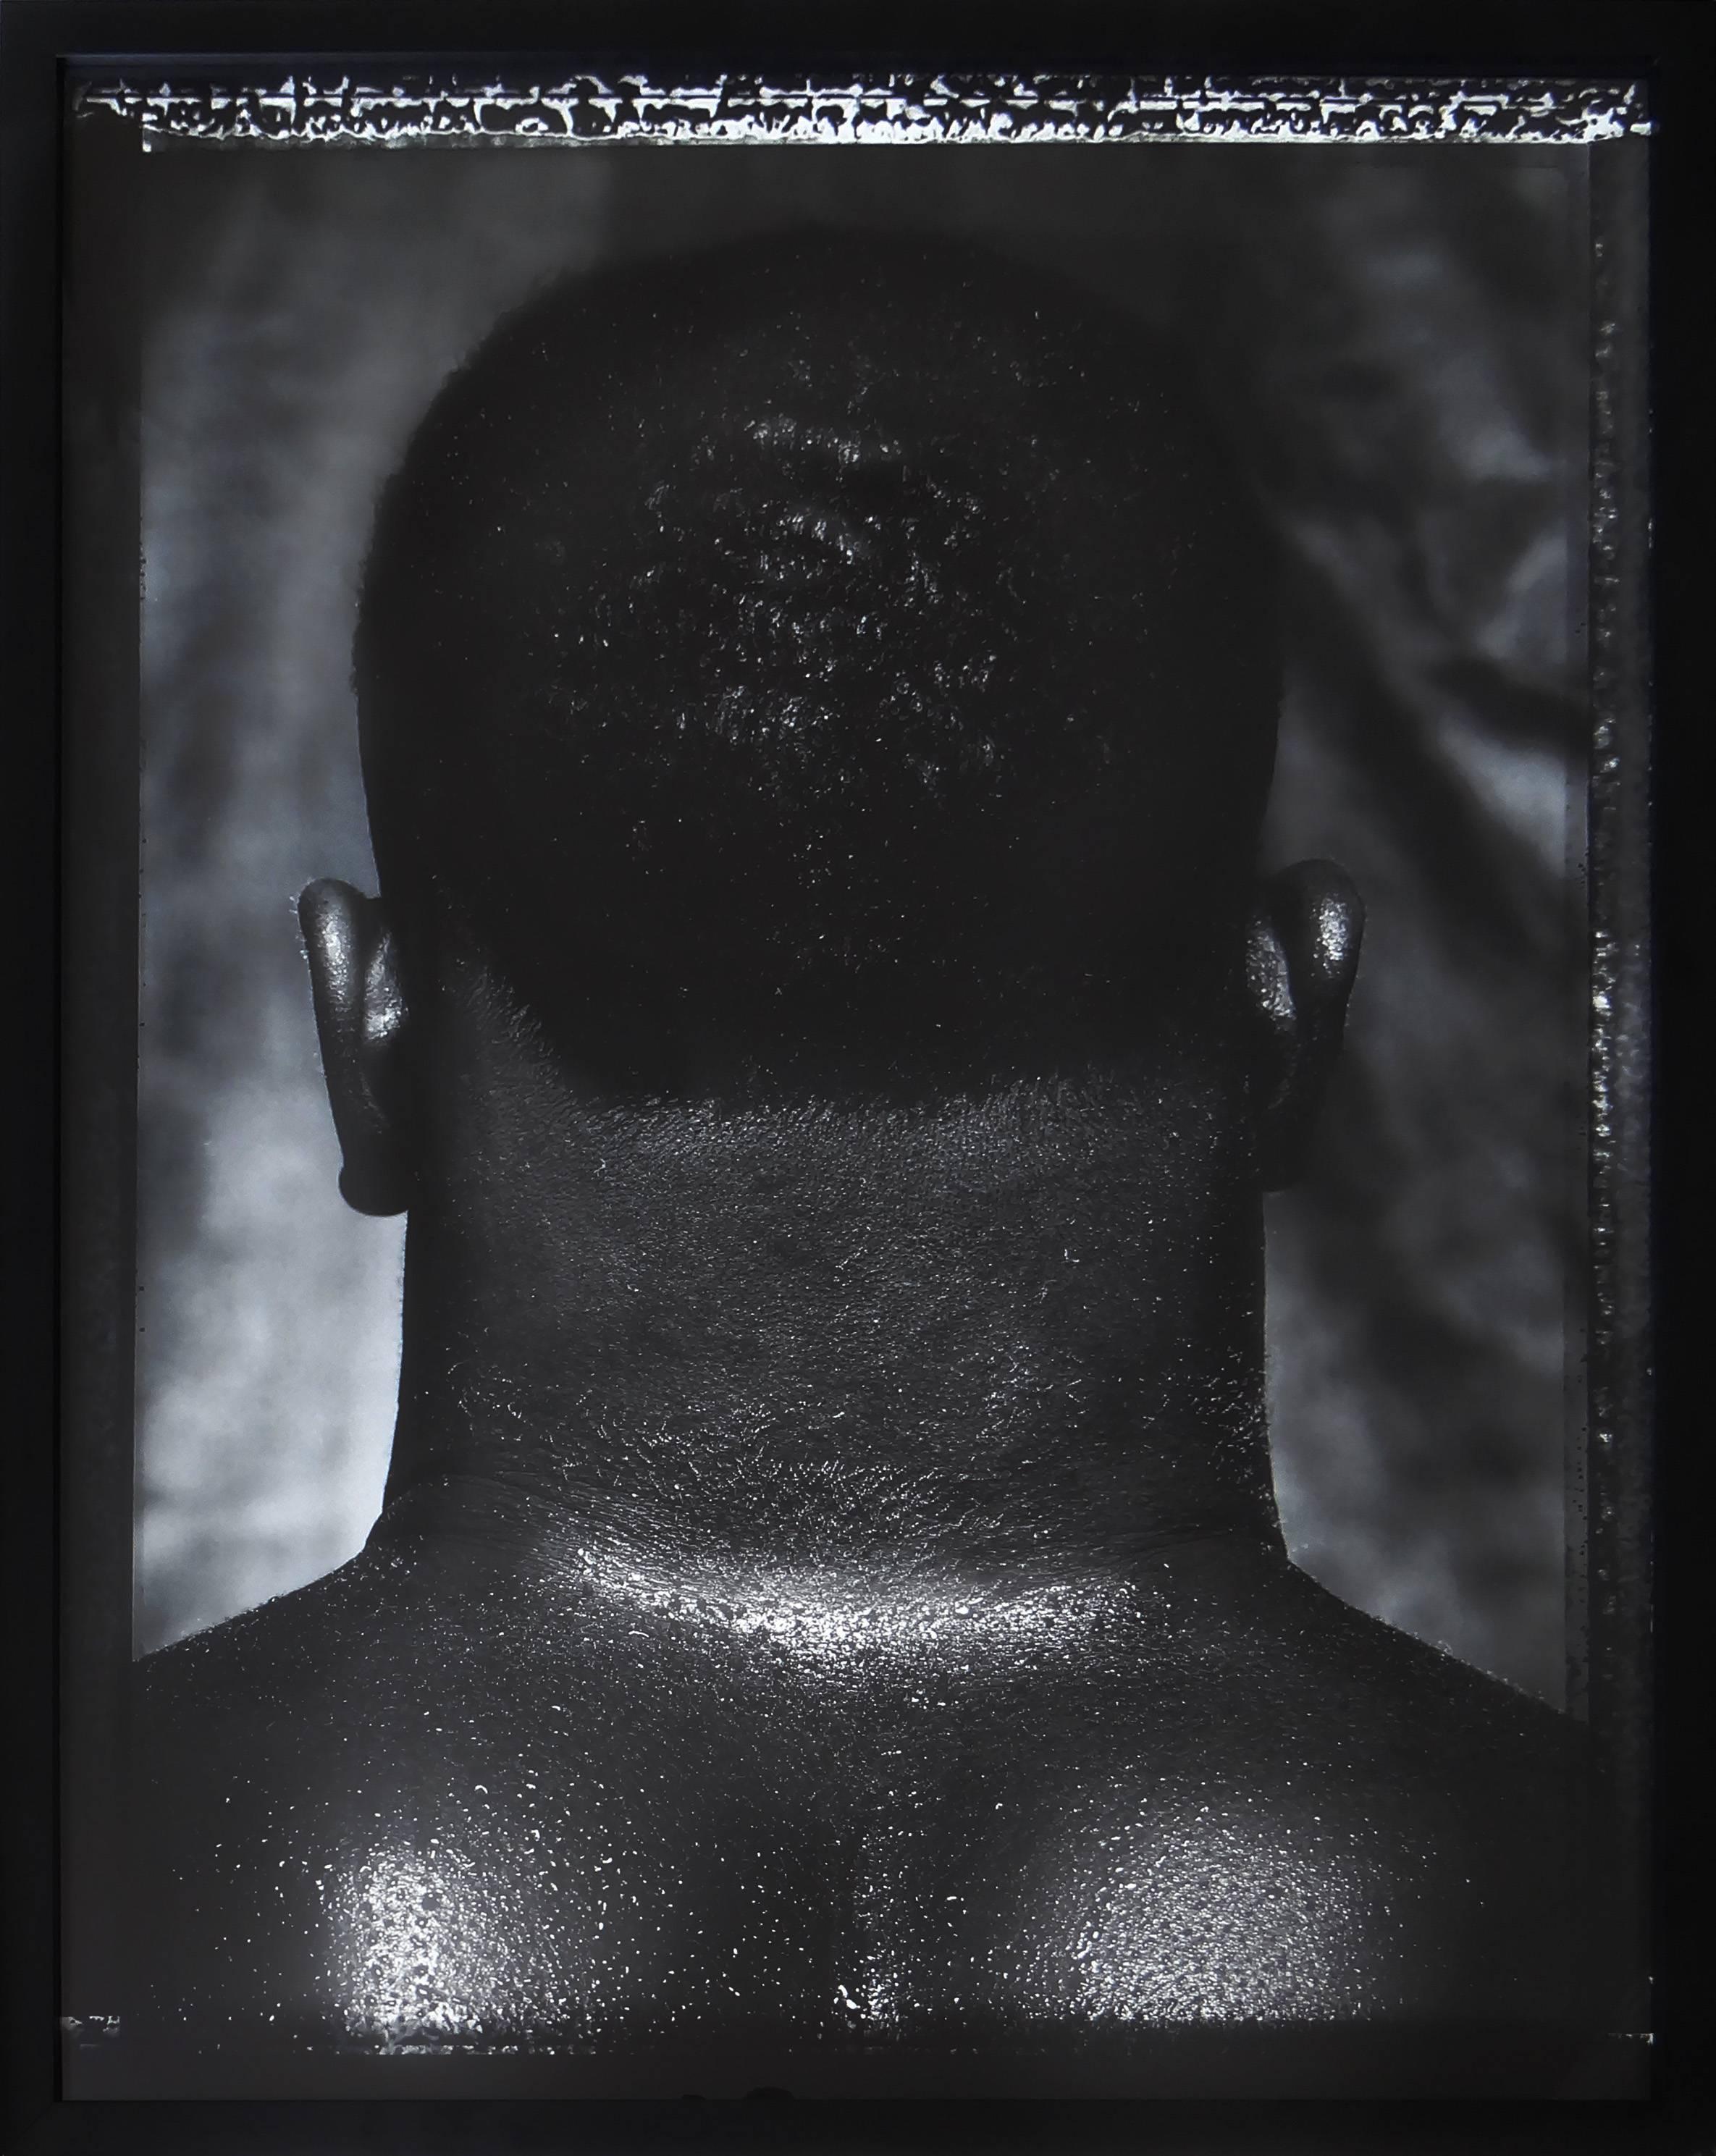 Albert Watson Black and White Photograph – „Mike Tyson, Catskills, New York, 1986“, gerahmter großer Gelatinesilberdruck